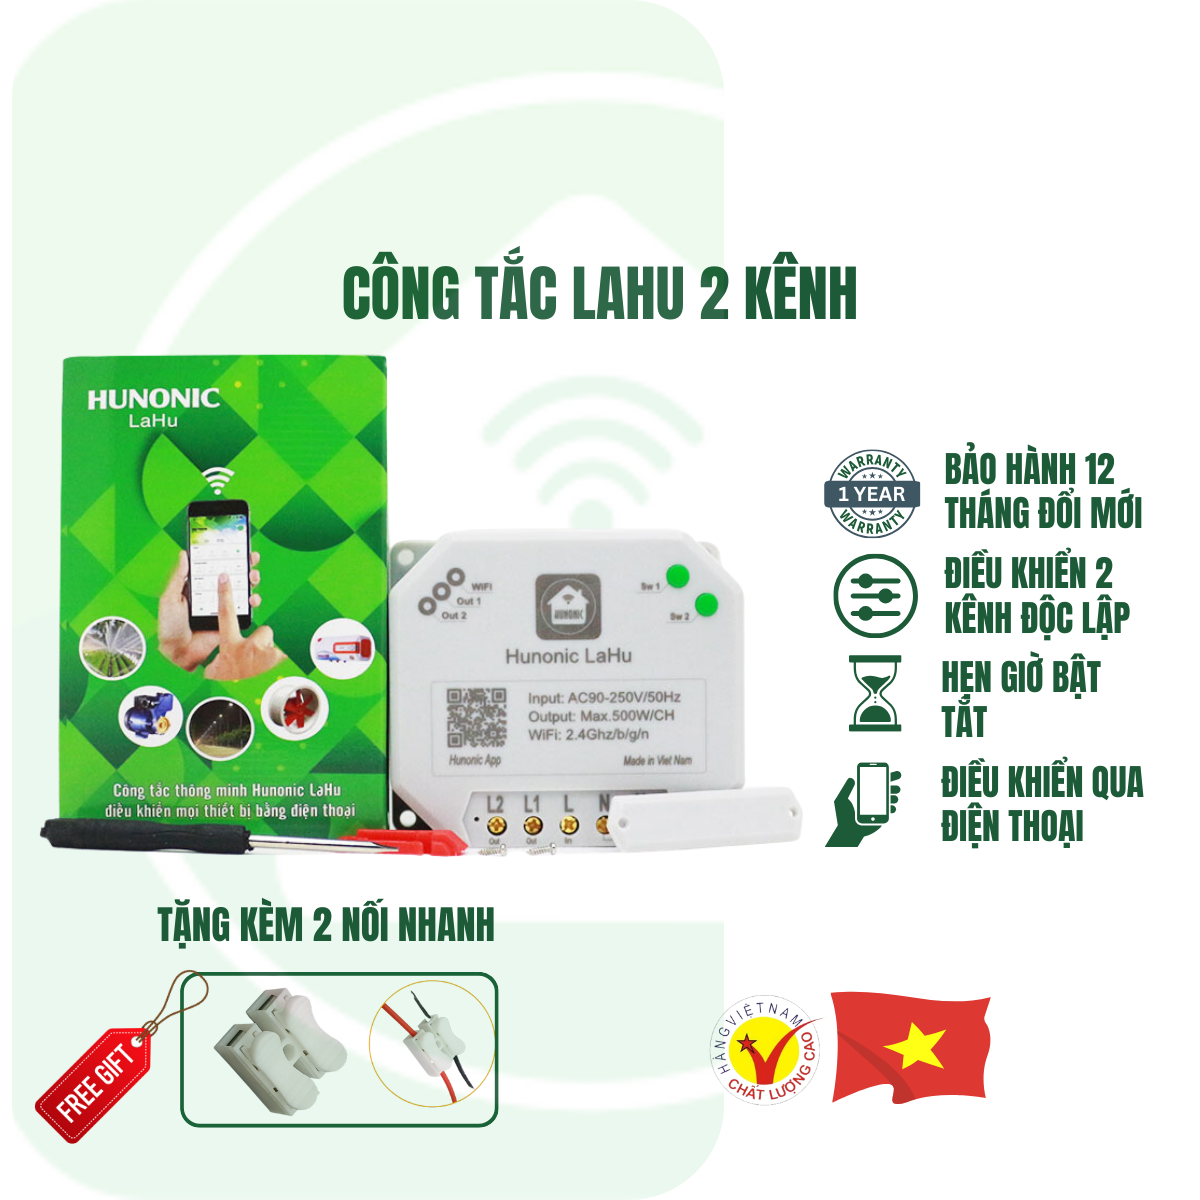 Công Tắc Điều Khiển Từ Xa Qua Điện Thoại Hunonic Lahu 4 kênh│Công tắc thông minh kết nối Wifi│ Hàng Việt